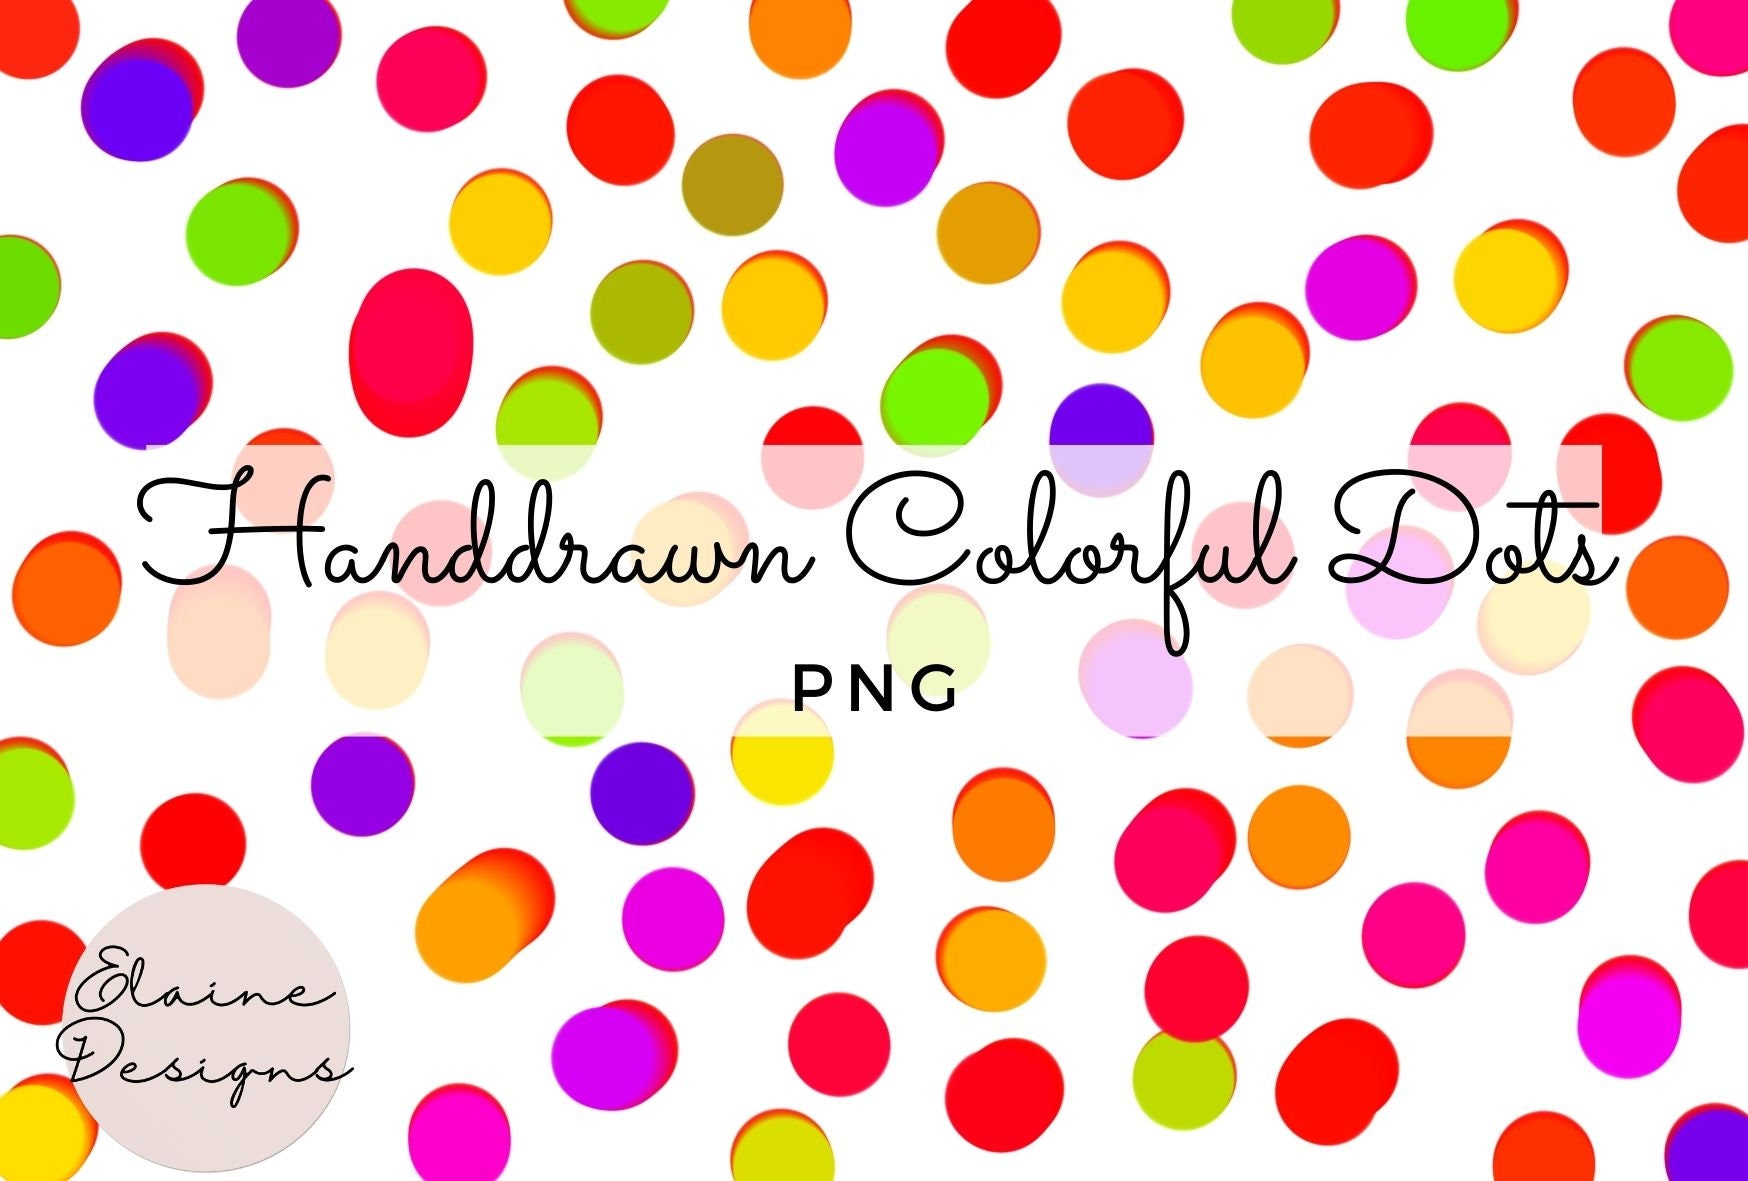 Dots Png Handdrawn Colorful Dots Rainbow Polkadot Pattern Background  Irregular Dots Colorful Imperfect Circles Round Polkadots PNG Set 68 